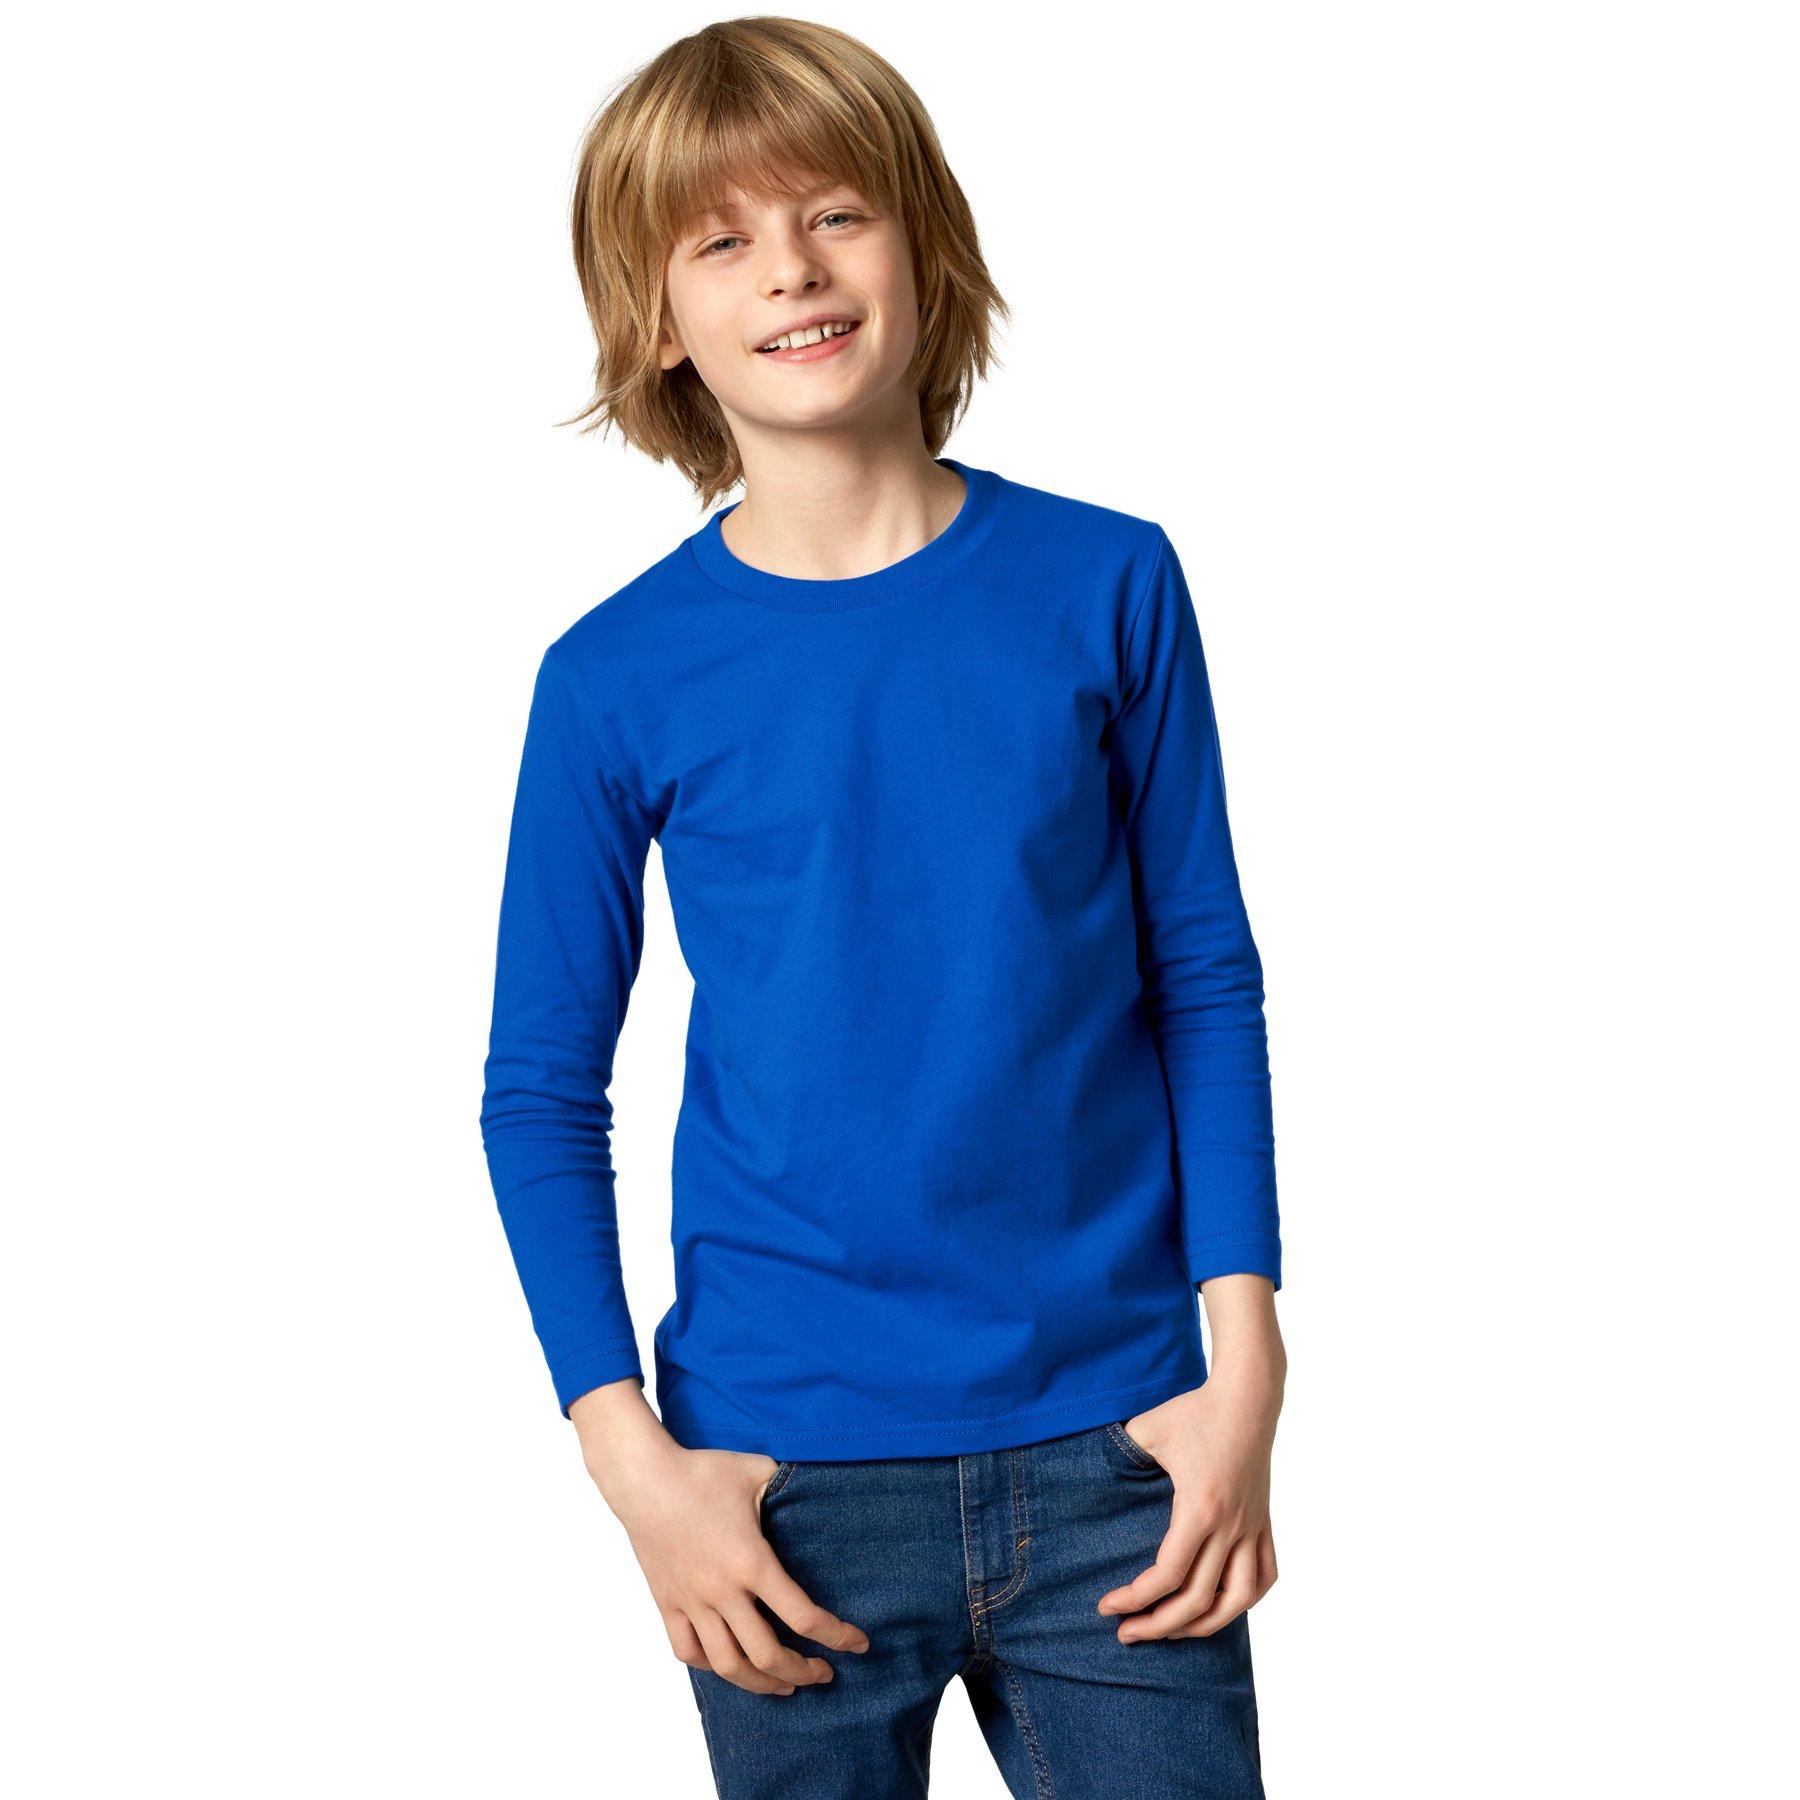 Langarm-shirt Kinder Jungen Blau 140 von Tectake